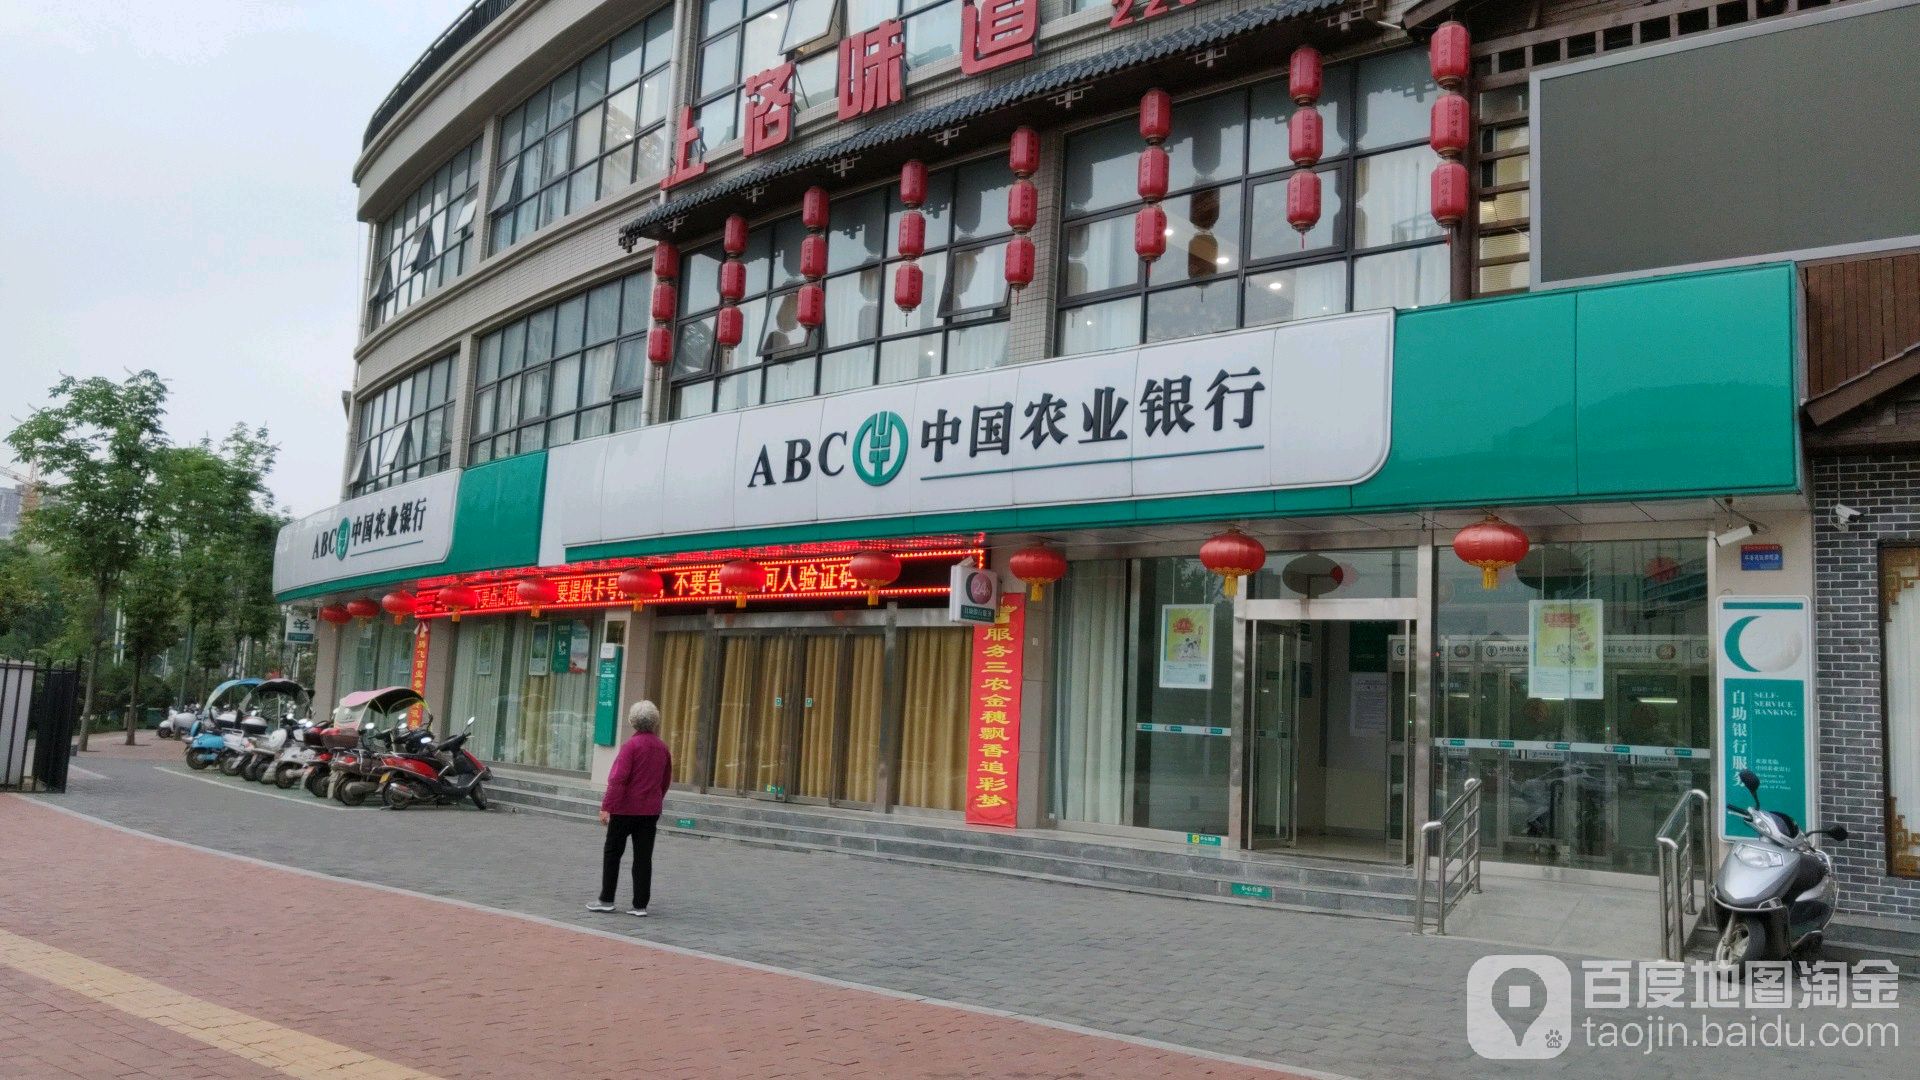 中國農業銀行24小時自助銀行(民生路店)